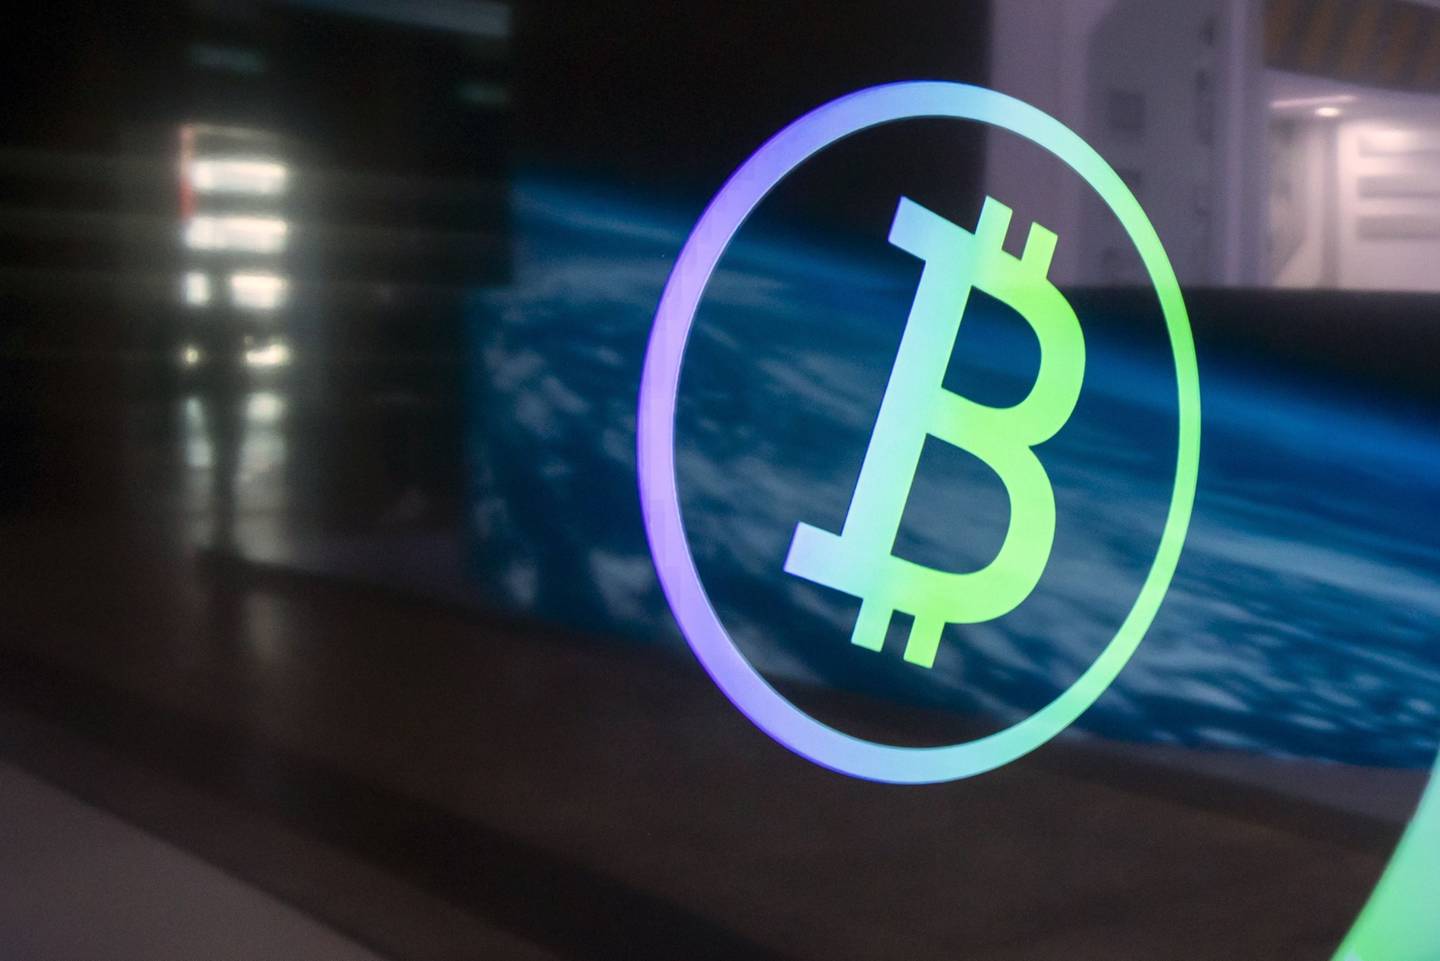 “Os mineradores de Bitcoin são alguns dos buscadores de rendimento mais vorazes do mercado hoje”